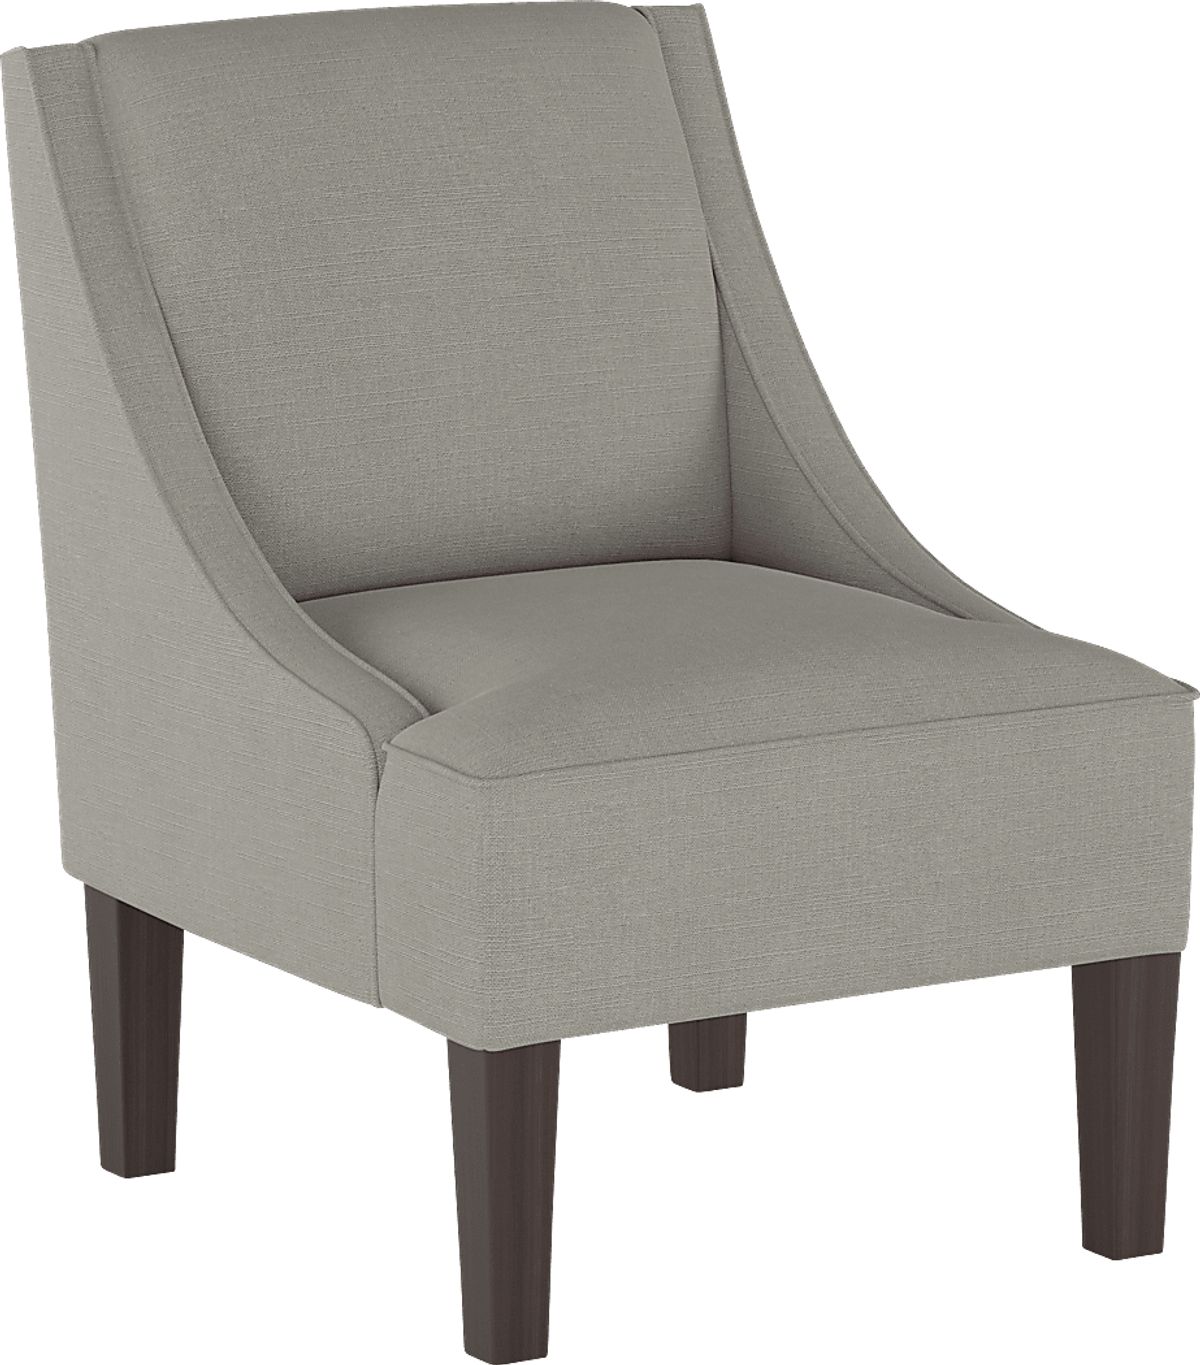 Creamy Hues Gray Accent Chair 10570530 Image Item?cache Id=228e9972c45cf3f40c0c092f8d94a57e&w=1200